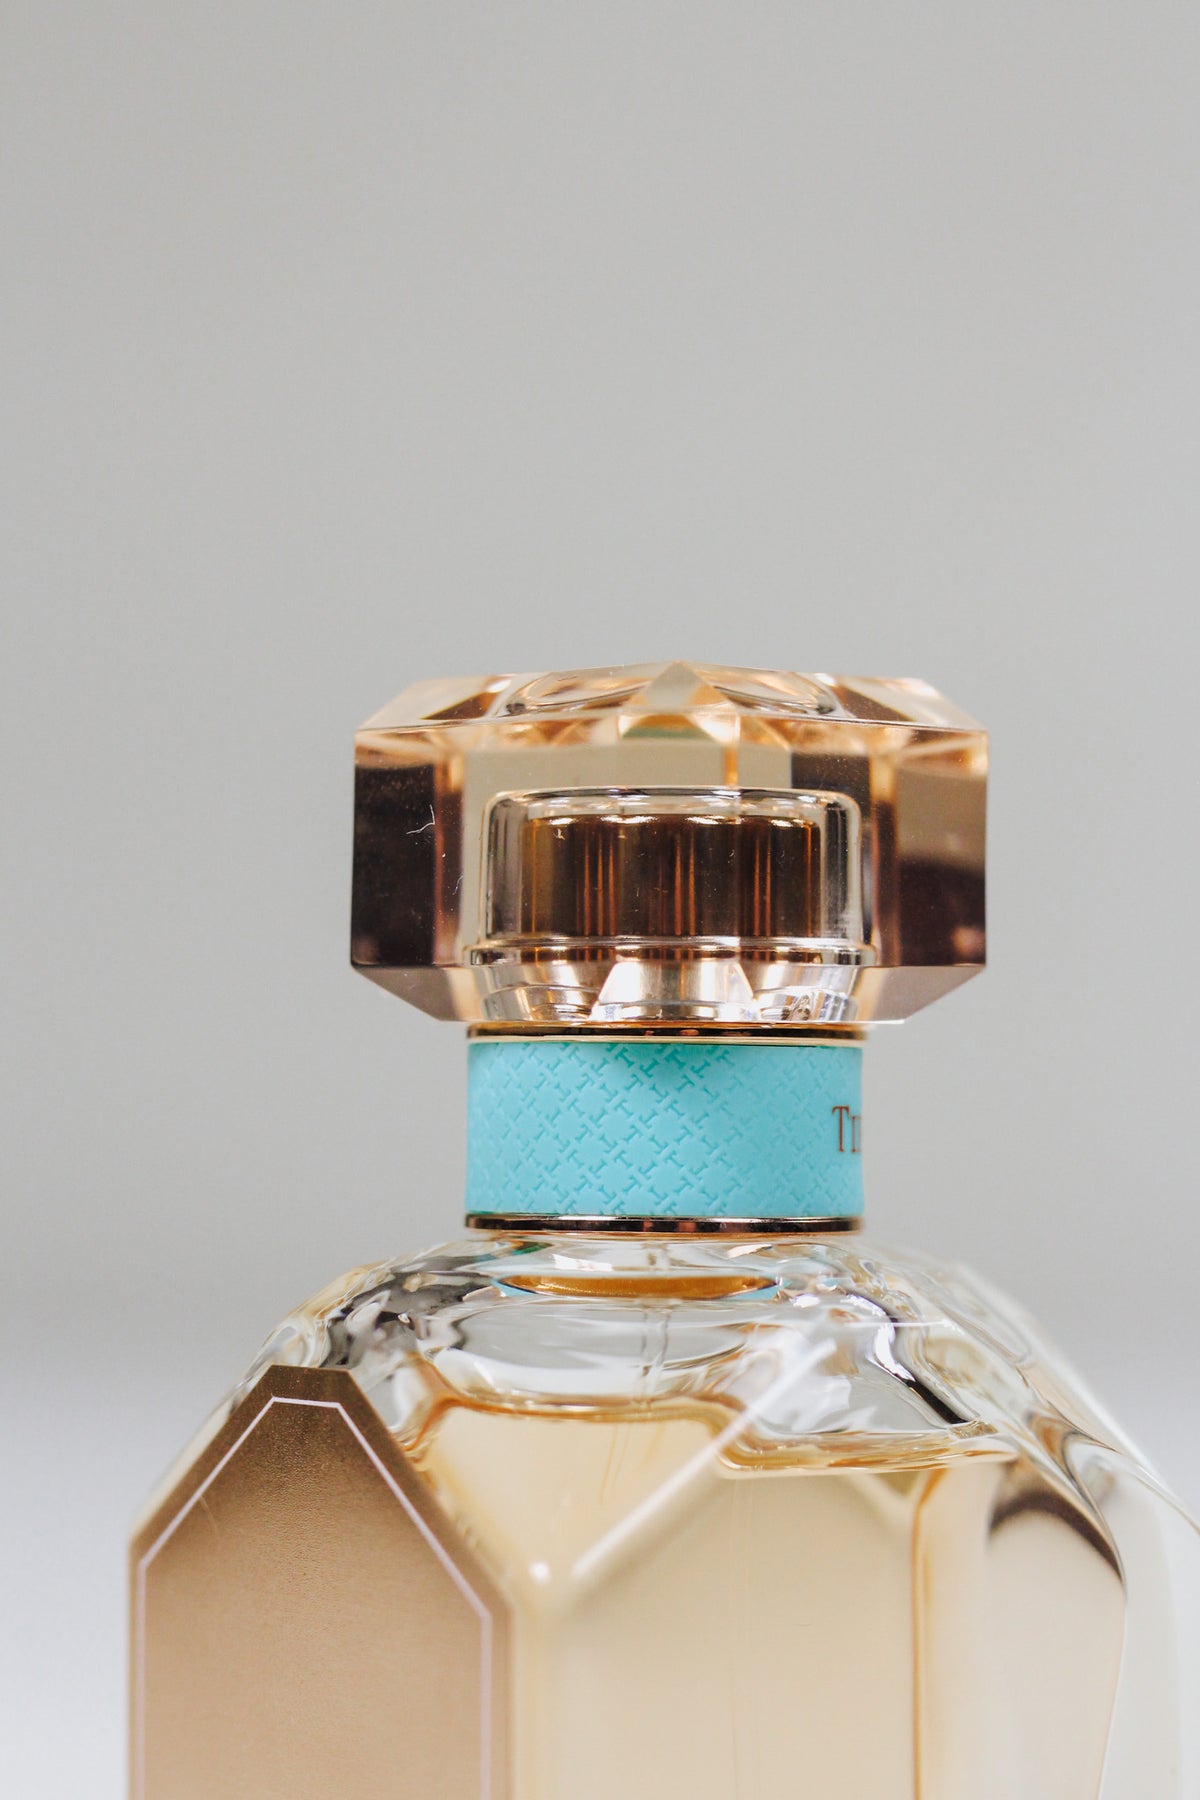 Rose Gold Eau de Parfum - Tiffany & Co.